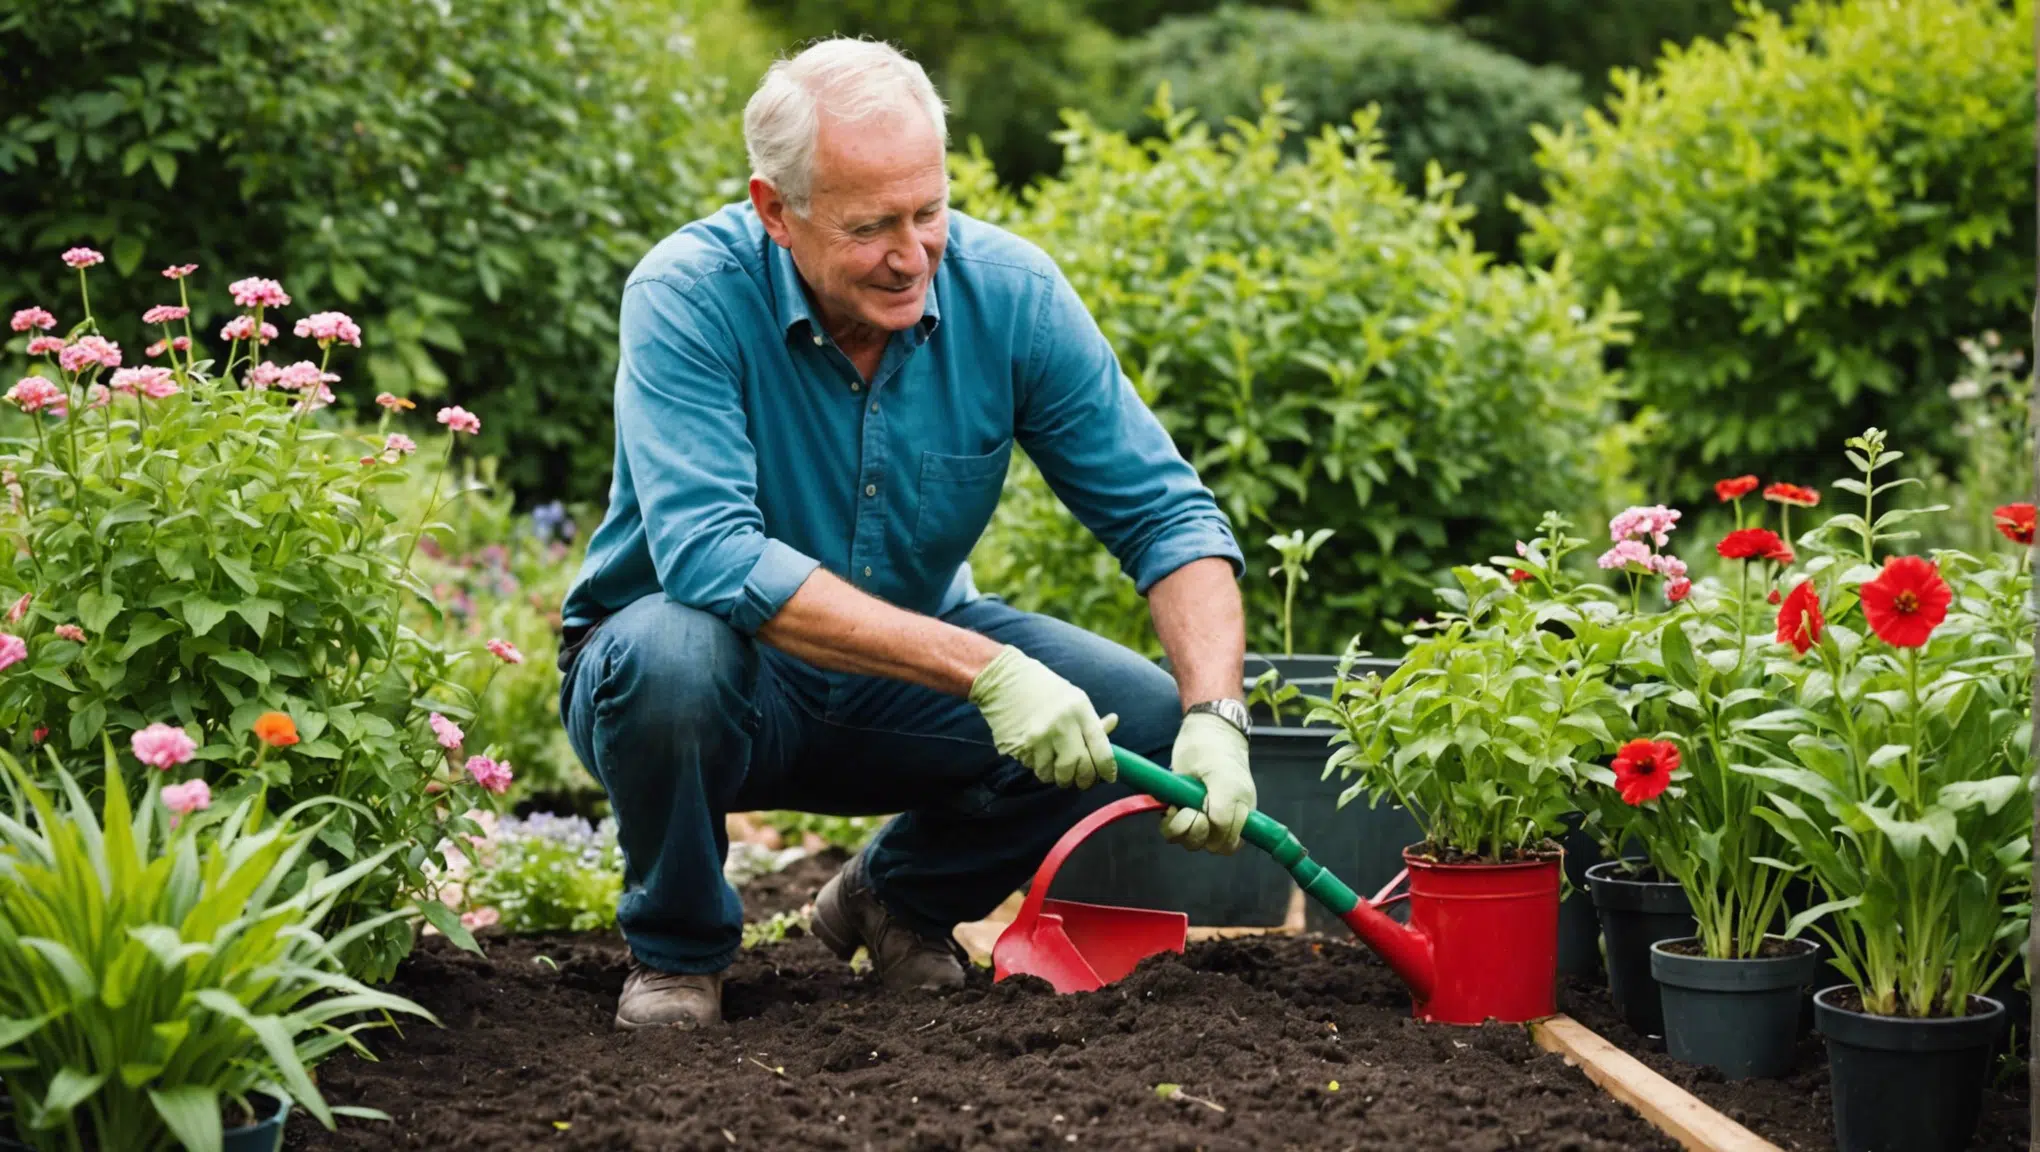 découvrez les bienfaits du jardinage pour la santé et le bien-être. apprenez comment cette activité peut améliorer votre qualité de vie au quotidien.